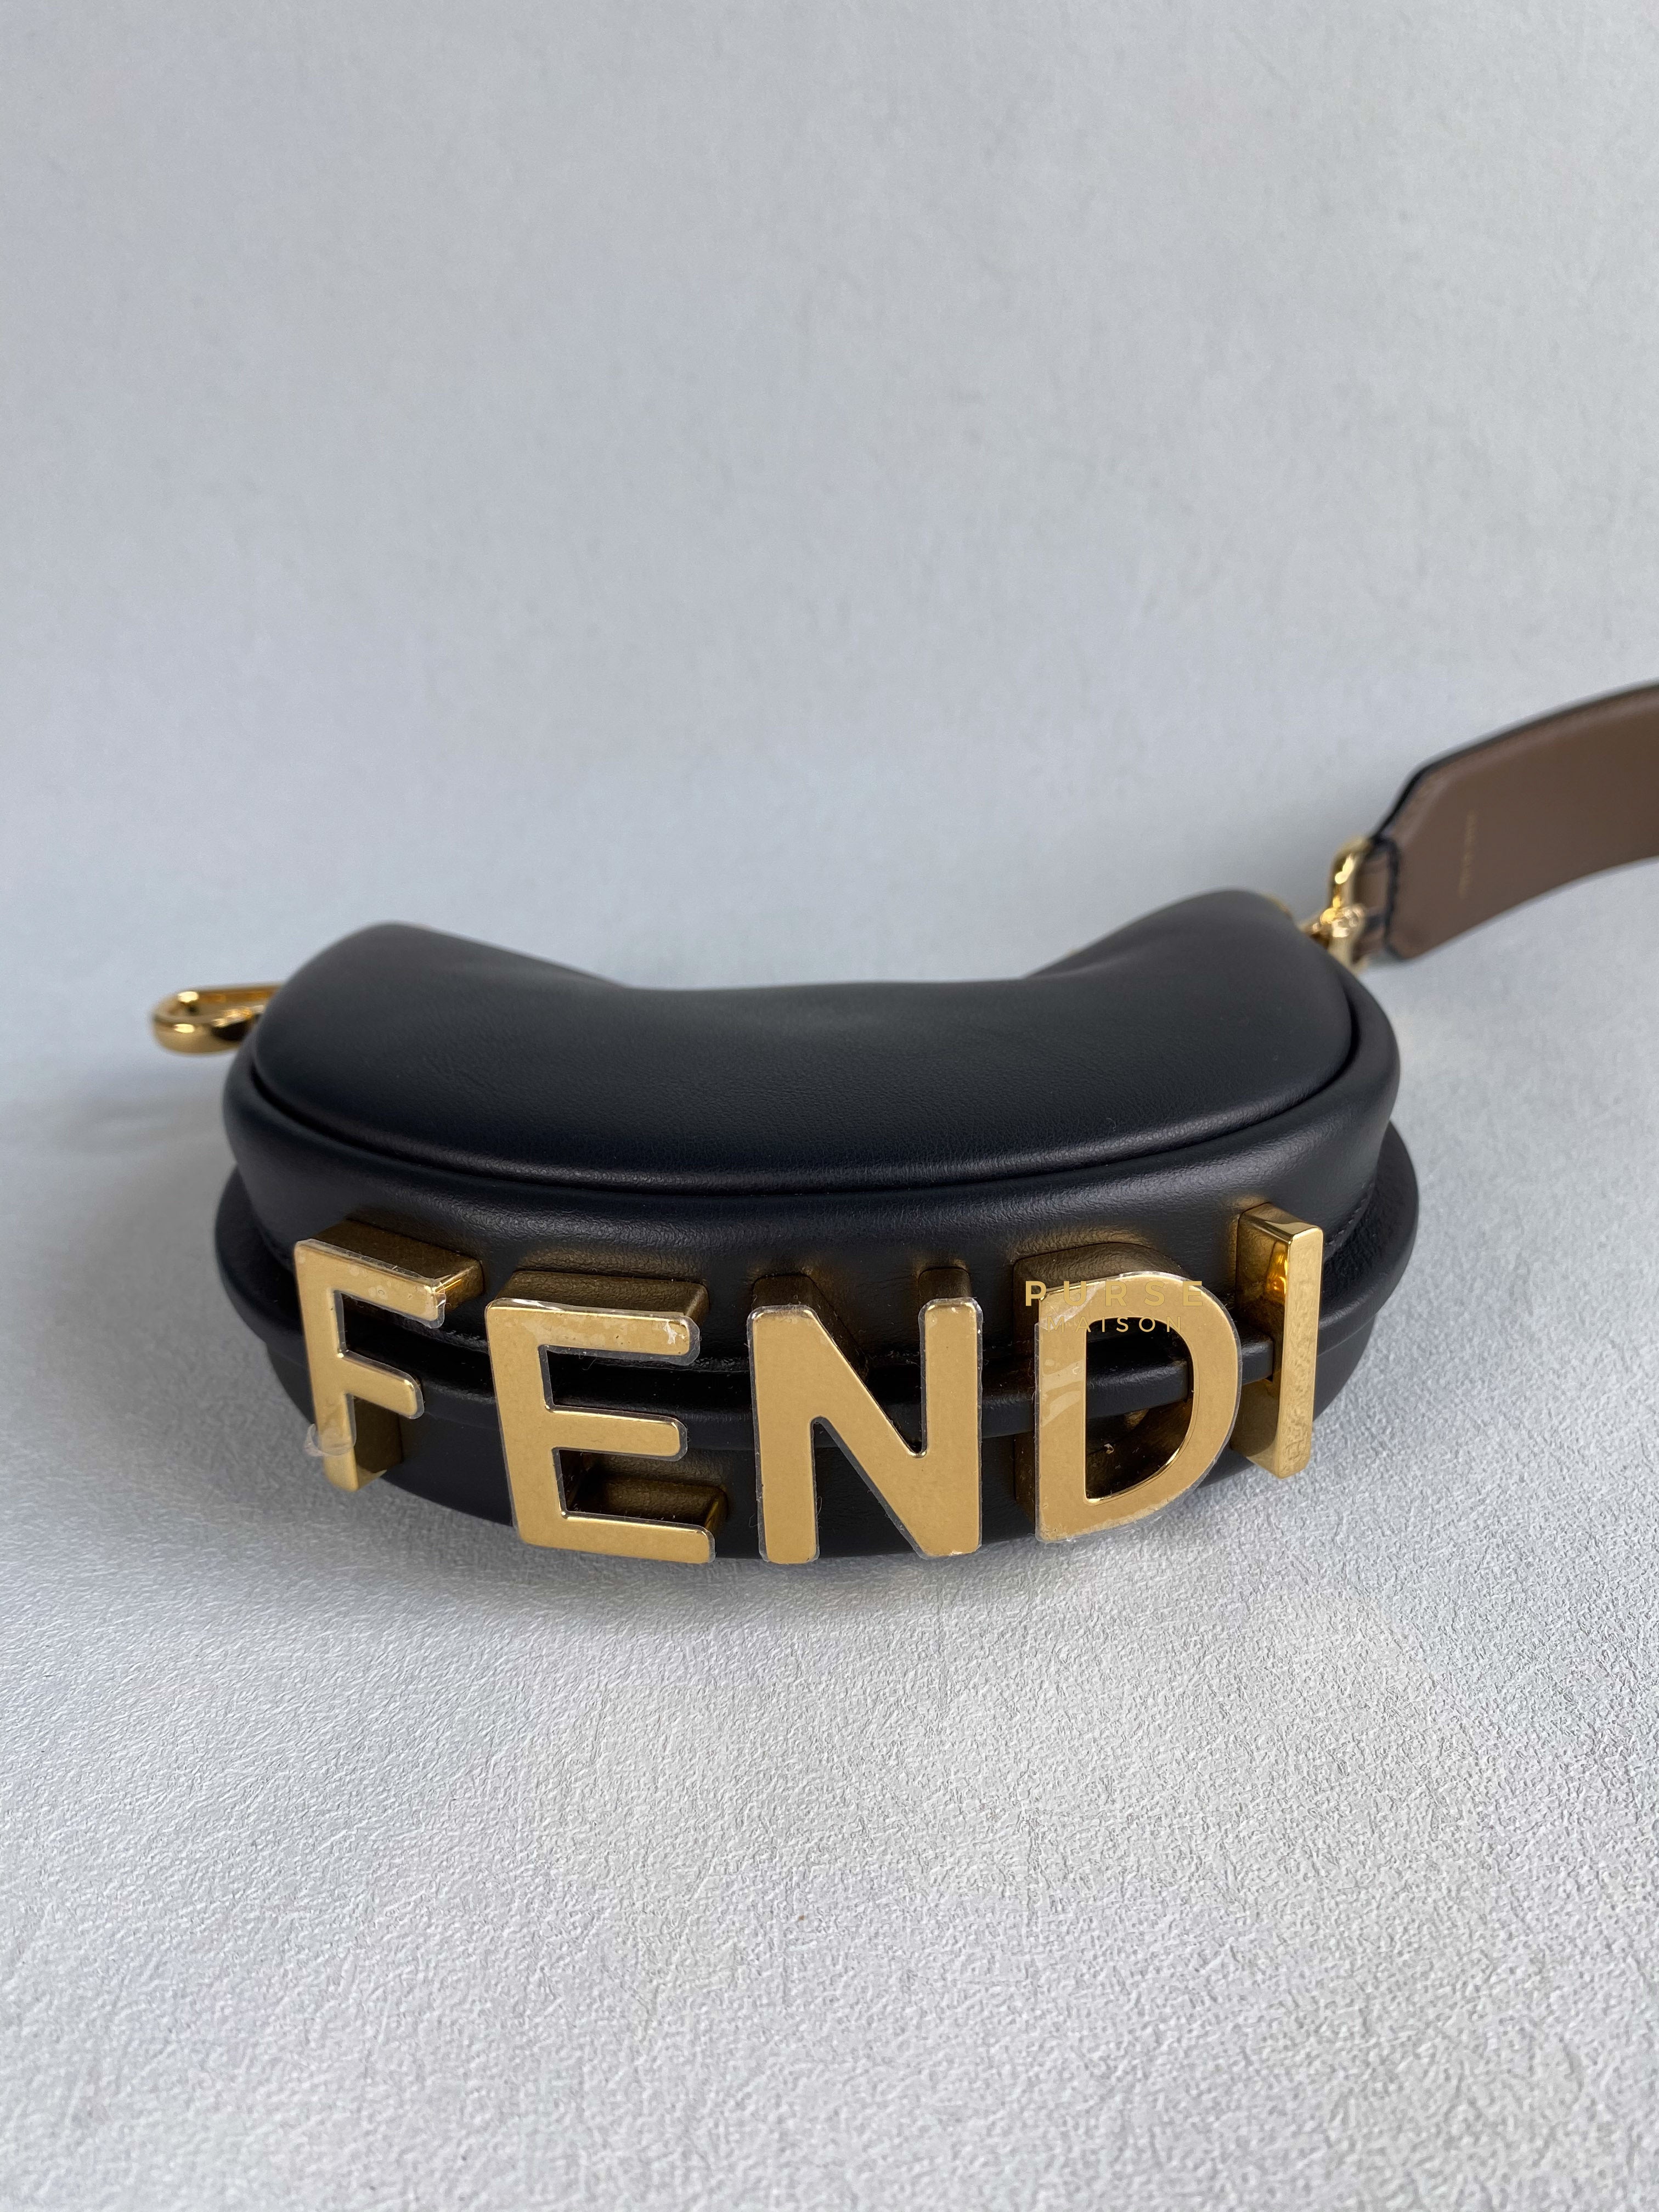 Fendi Nano Fendigraphy Shoulder Bag with strap | Purse Maison Luxury Bags Shop